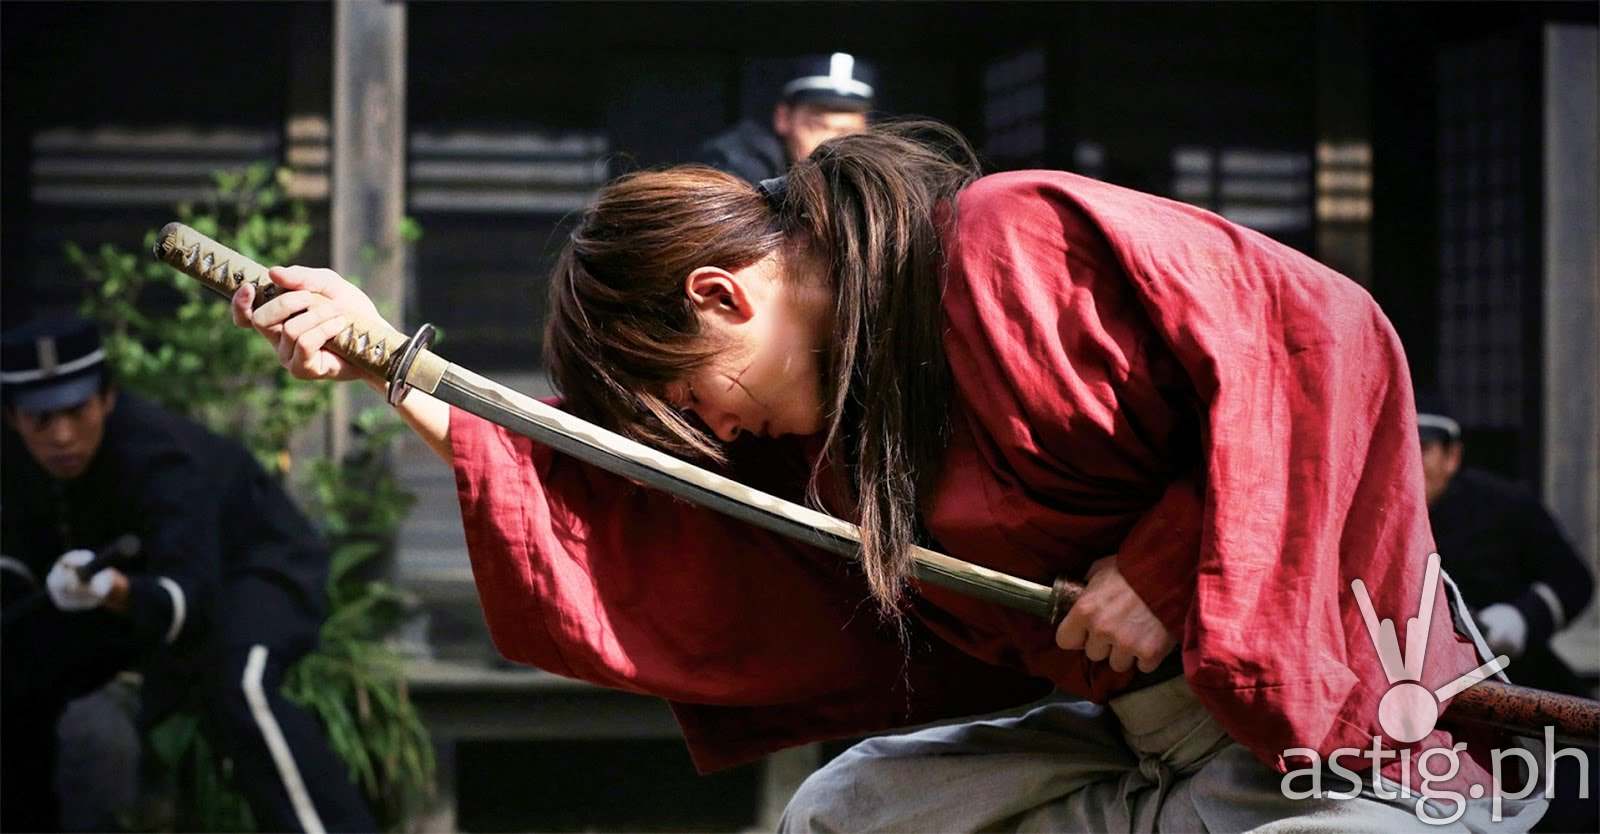 Rurouni Kenshin Samurai X live action